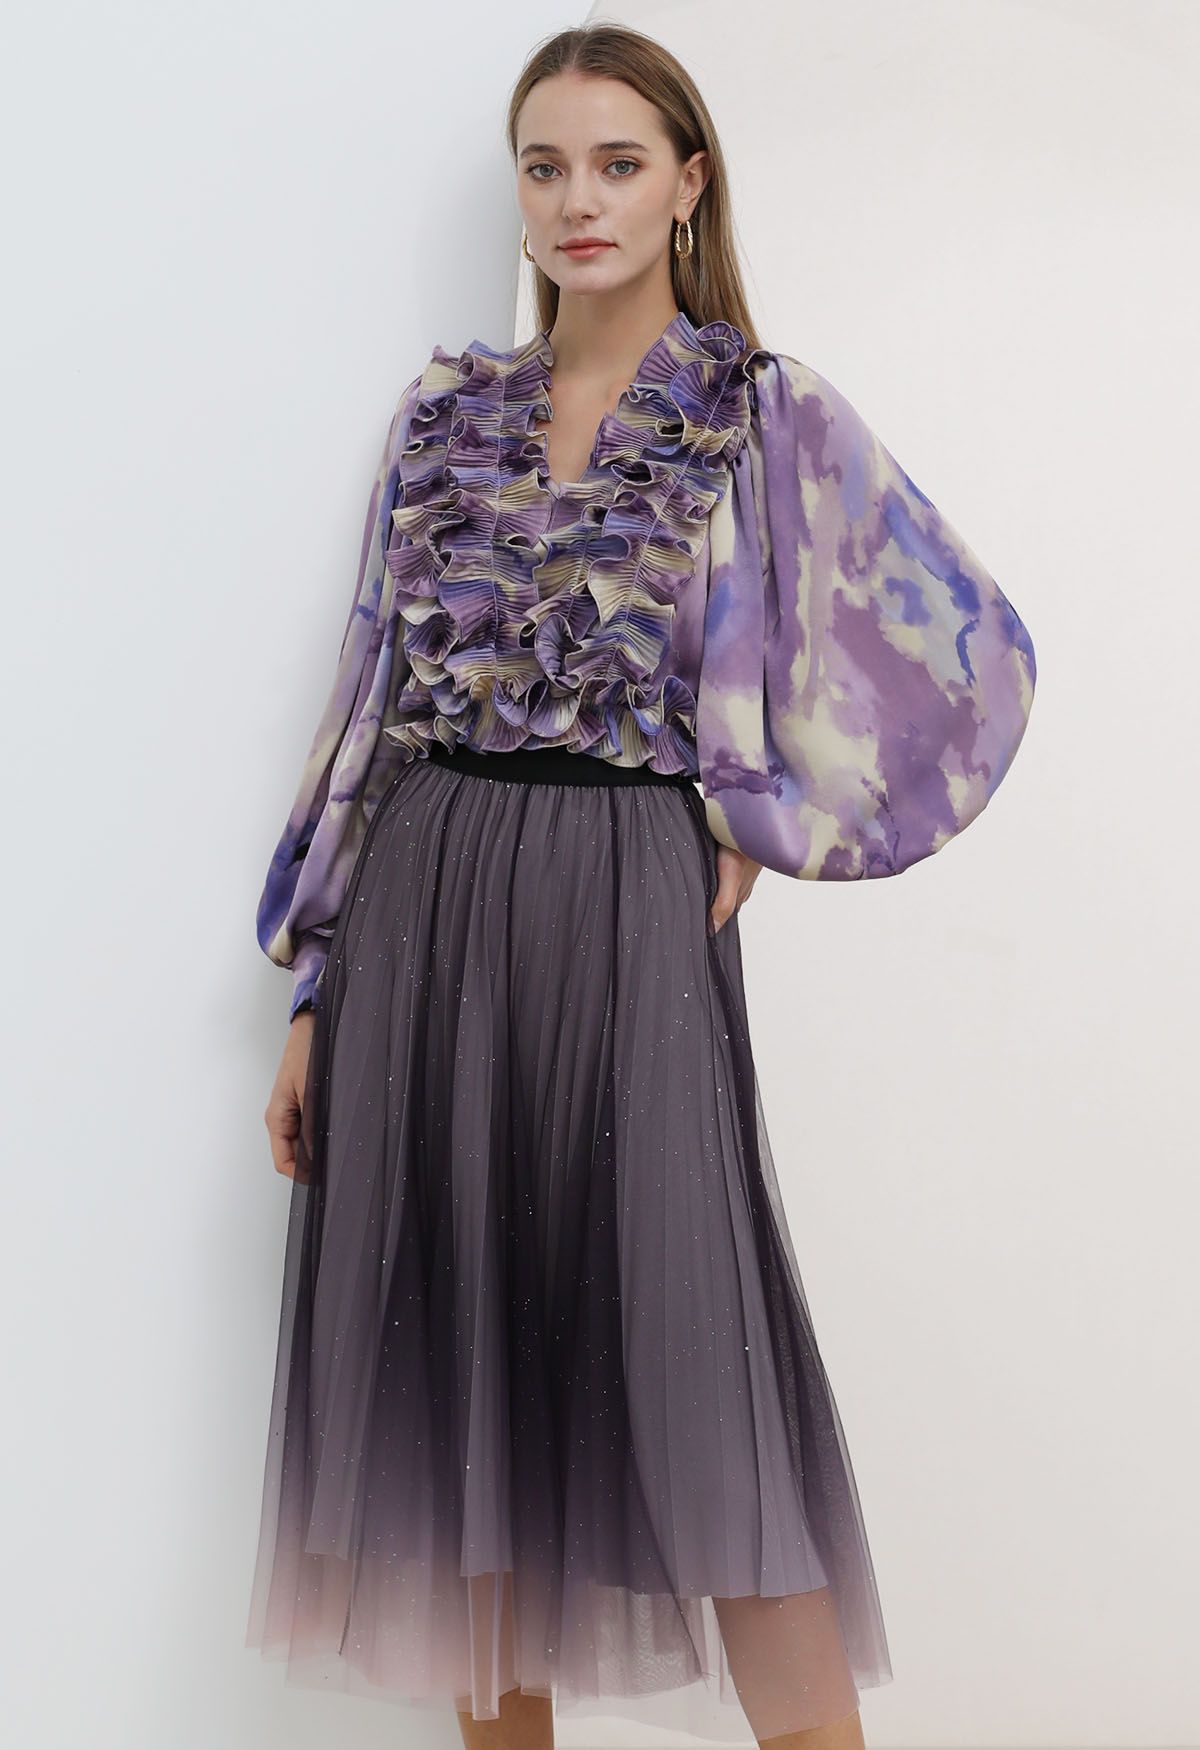 Falda larga con lentejuelas y malla degradada en violeta